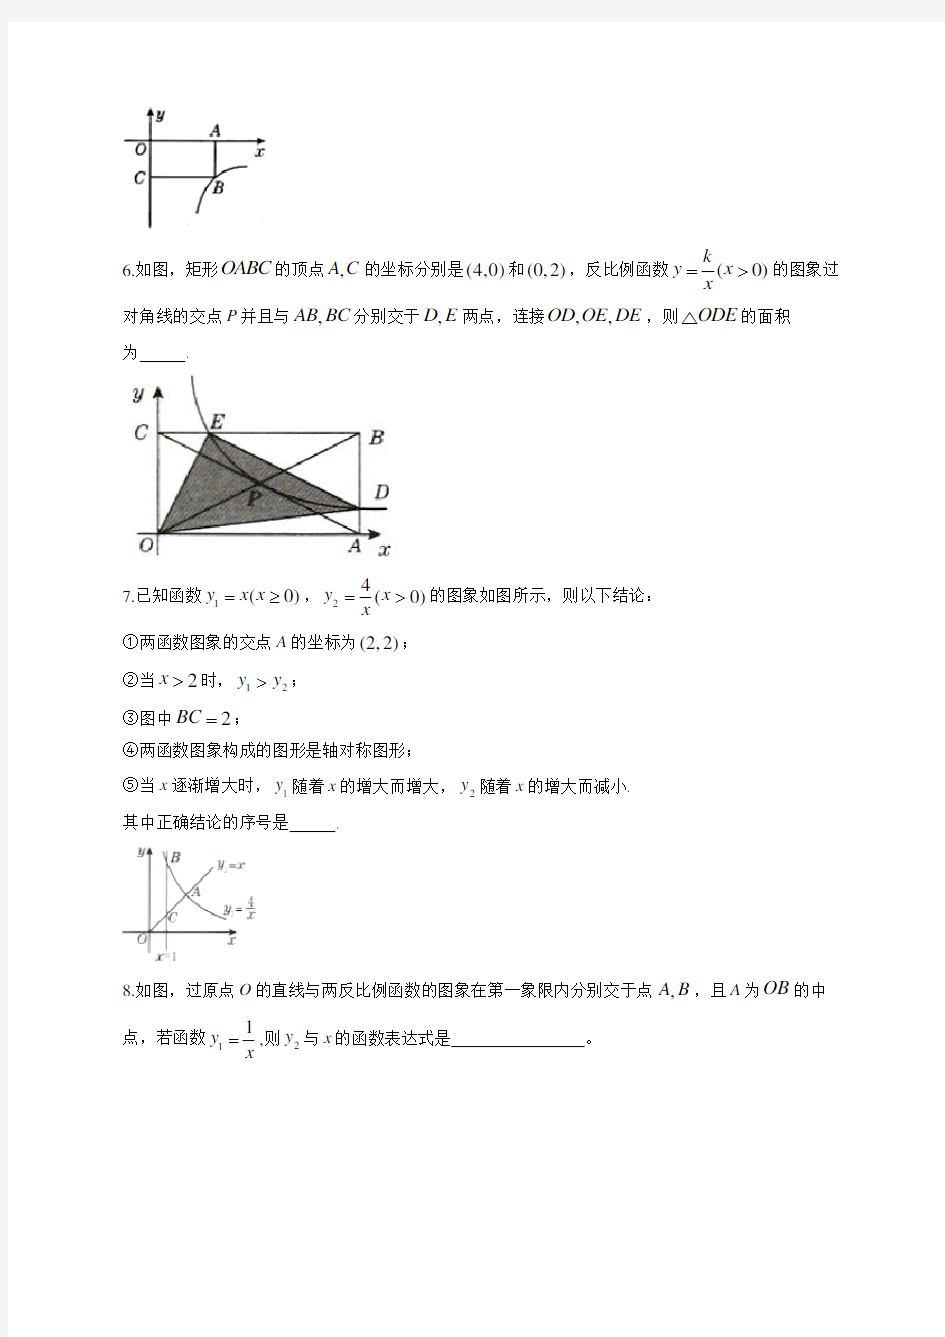 初中数学一次函数反比例函数相似三角形练习题(附答案)